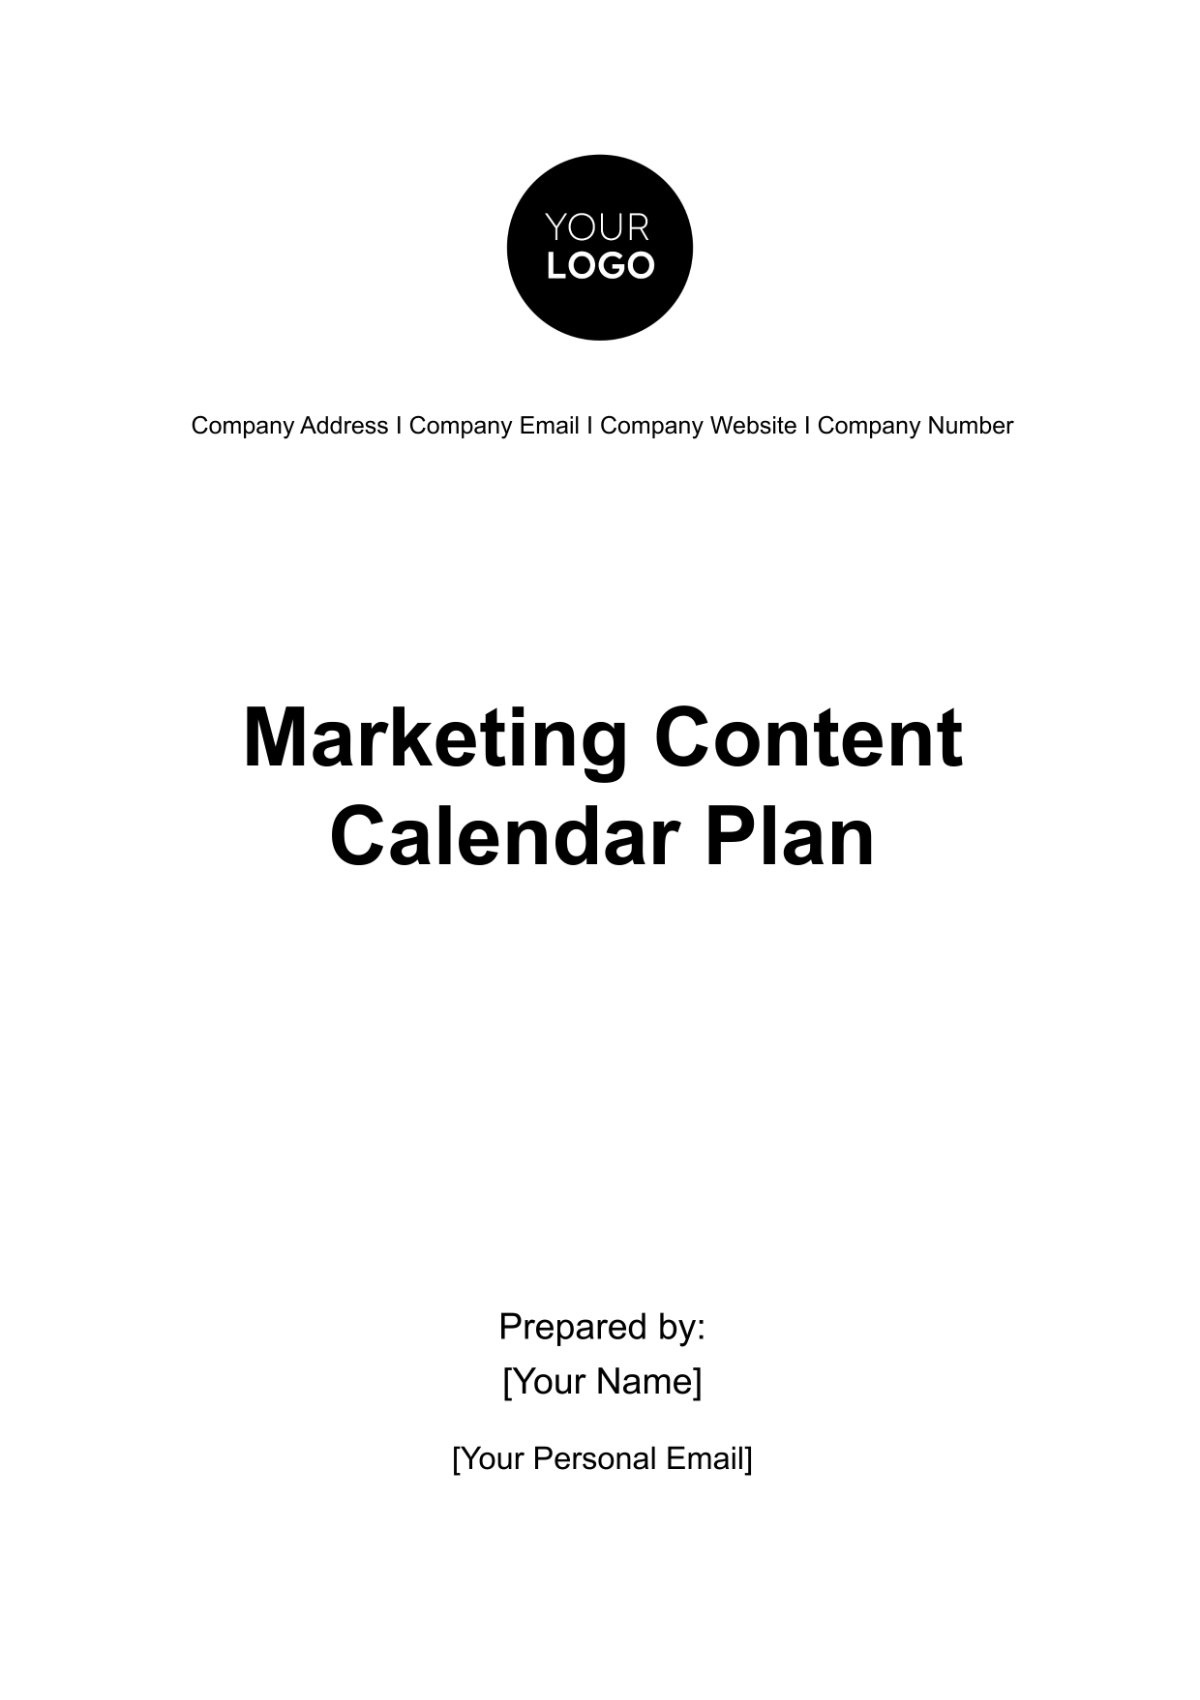 Free Marketing Content Calendar Plan Template